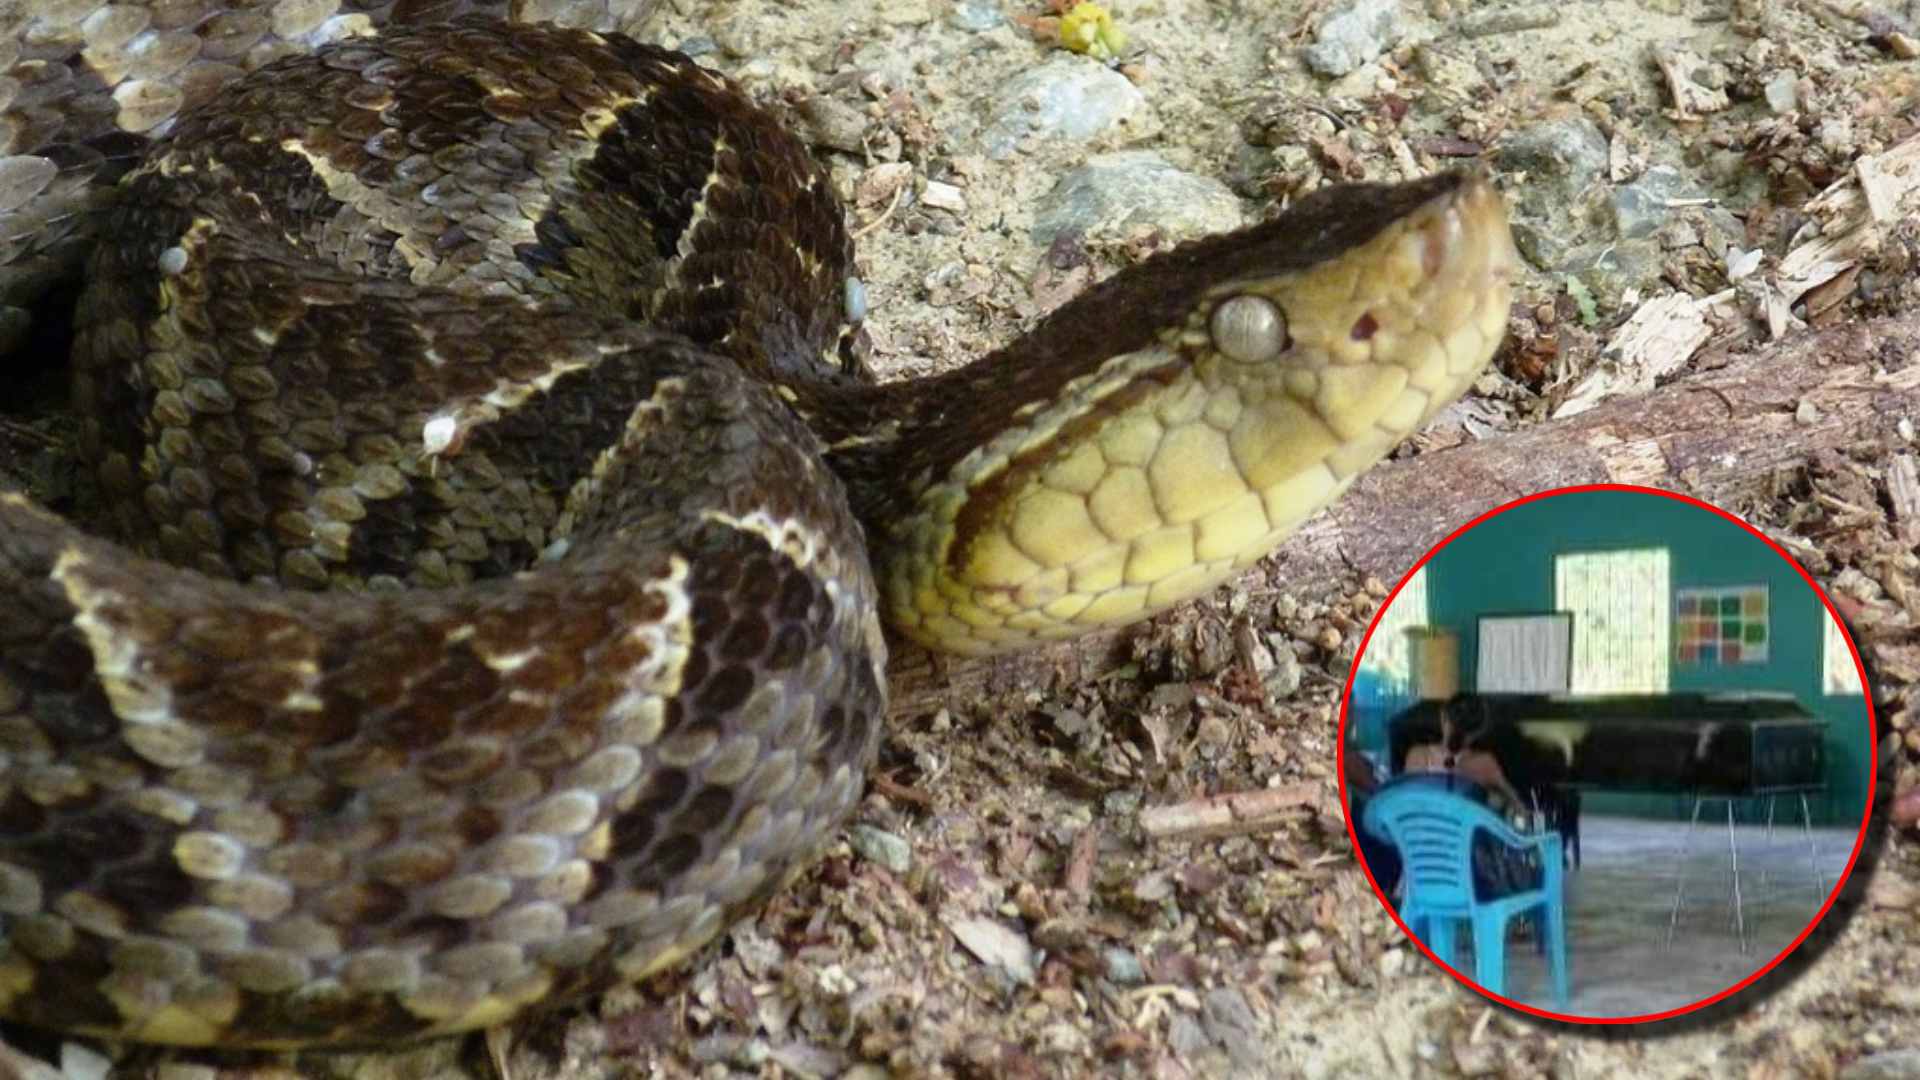 Adolescente fallece después de ser mordido por serpiente barba amarilla en Colón